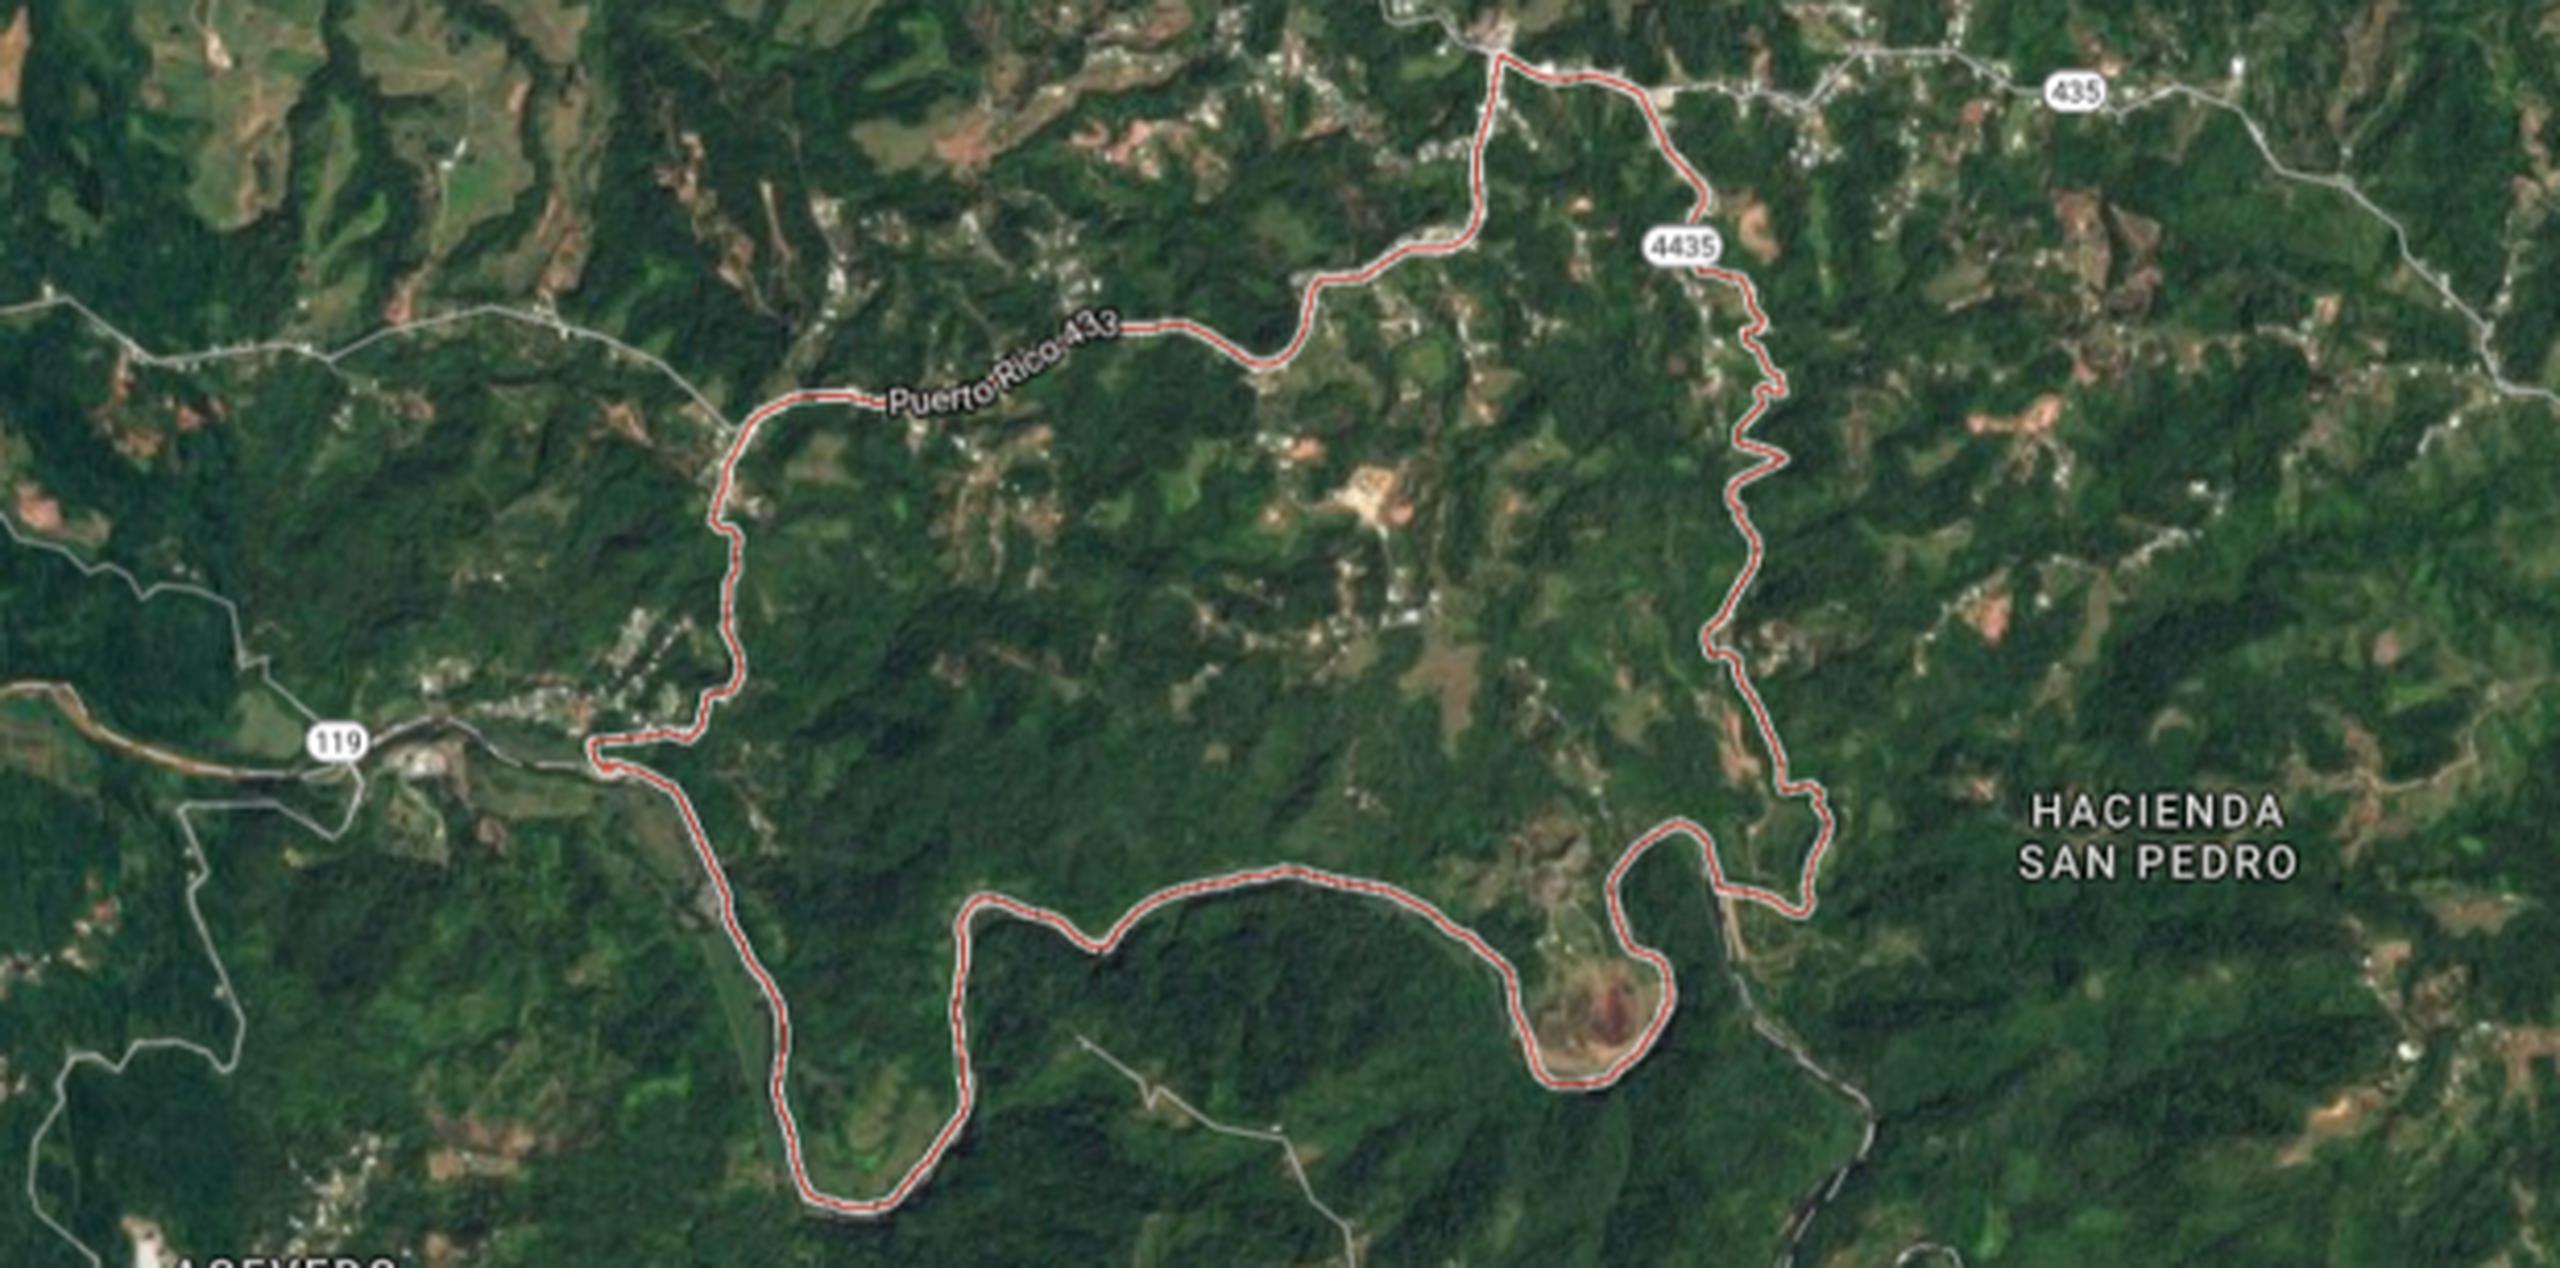 El accidente ocurrió la carretera PR-435, intersección con la PR-433, en el barrio Mirabales. (Google Maps)